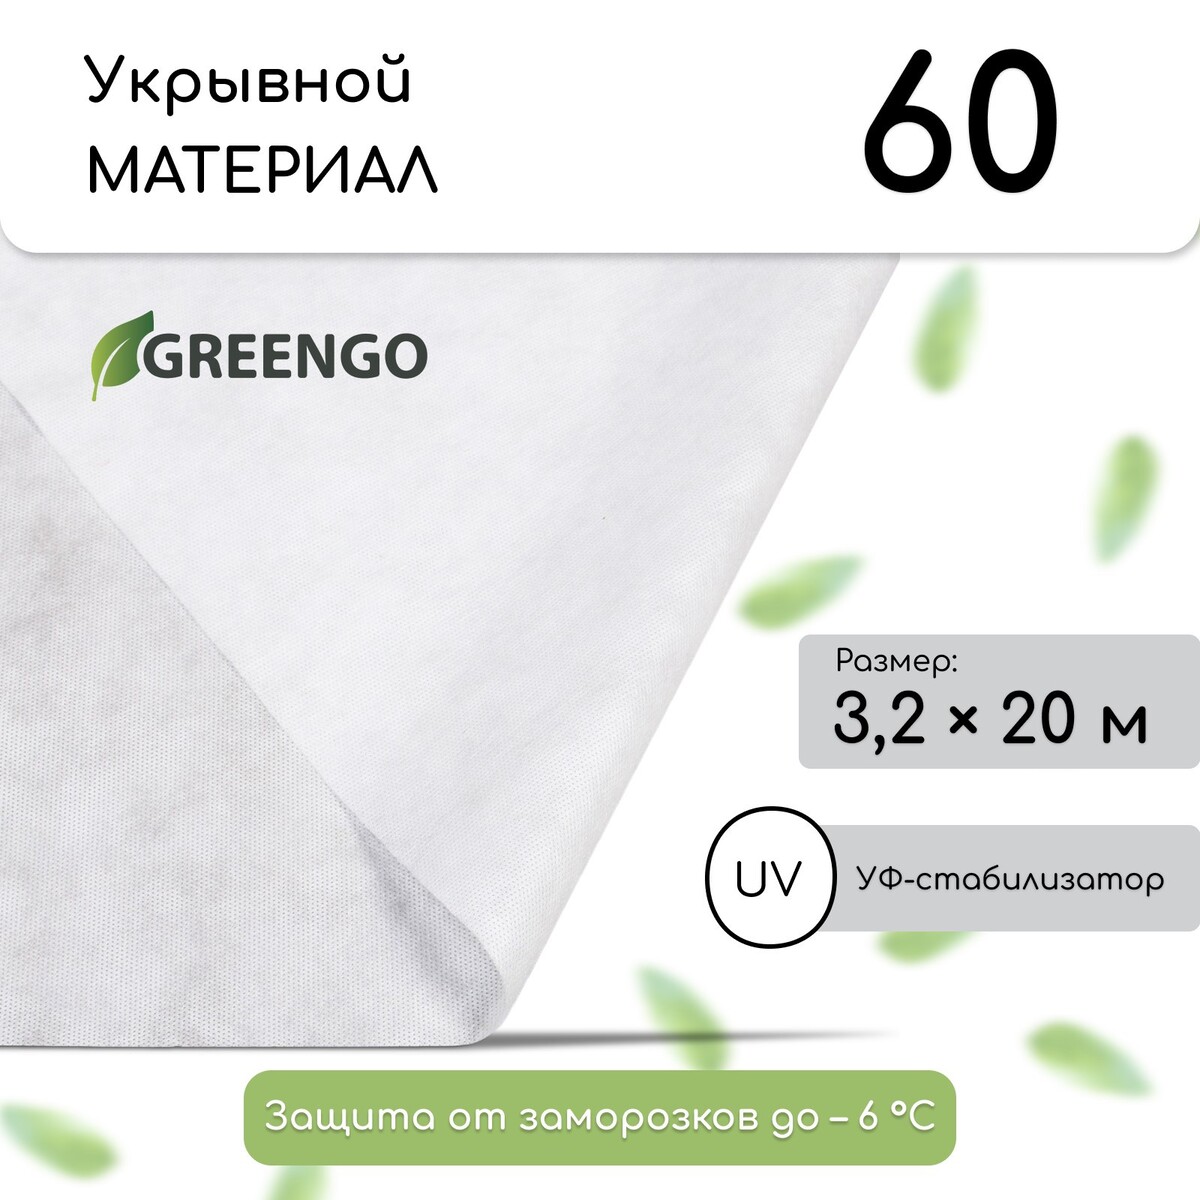 Материал укрывной, 20 × 3.2 м, плотность 60 г/м², спанбонд с уф-стабилизатором, белый, greengo, эконом 30%